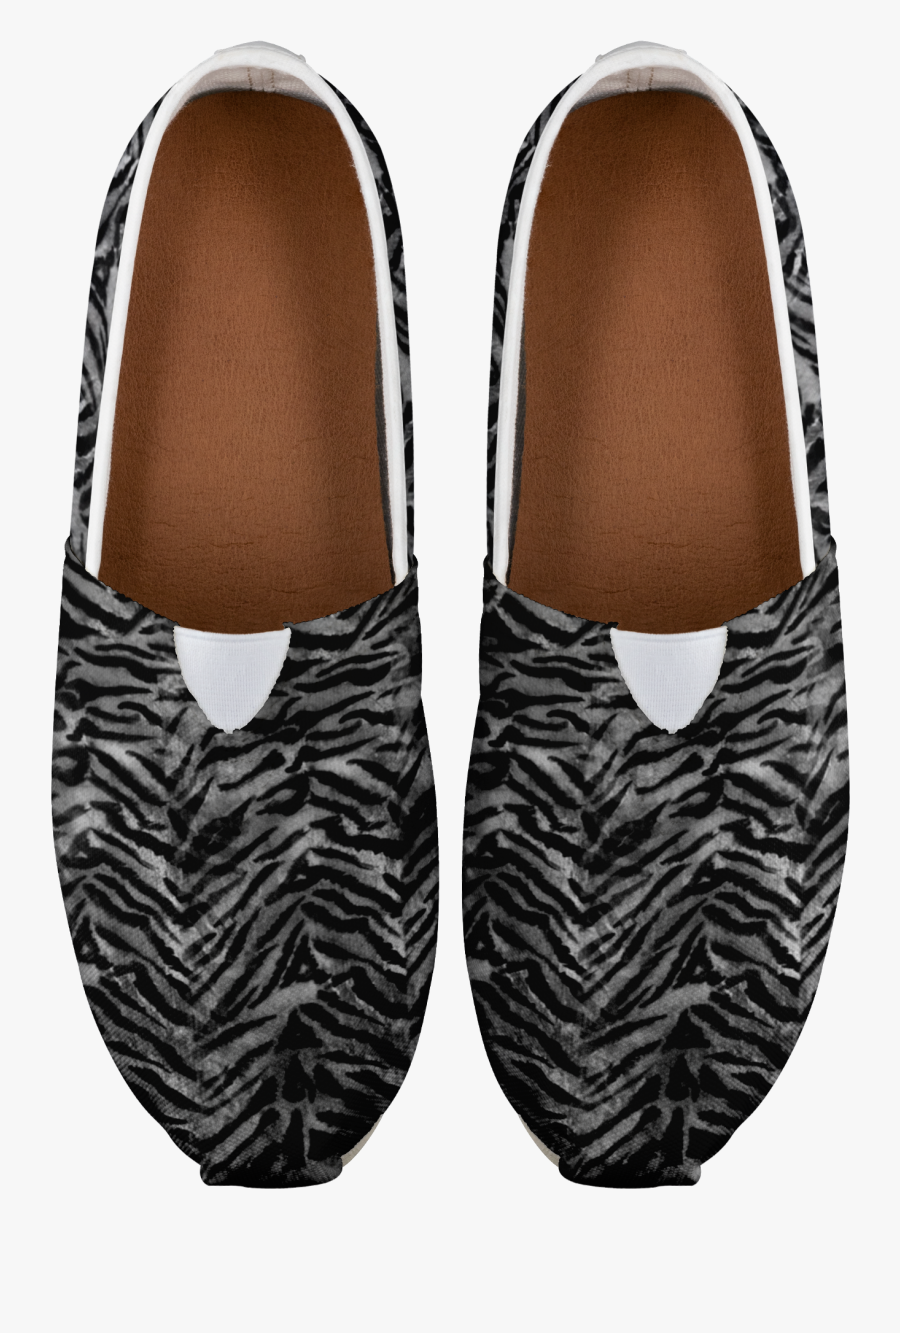 Transparent Tiger Stripes Png - Slip-on Shoe, Transparent Clipart